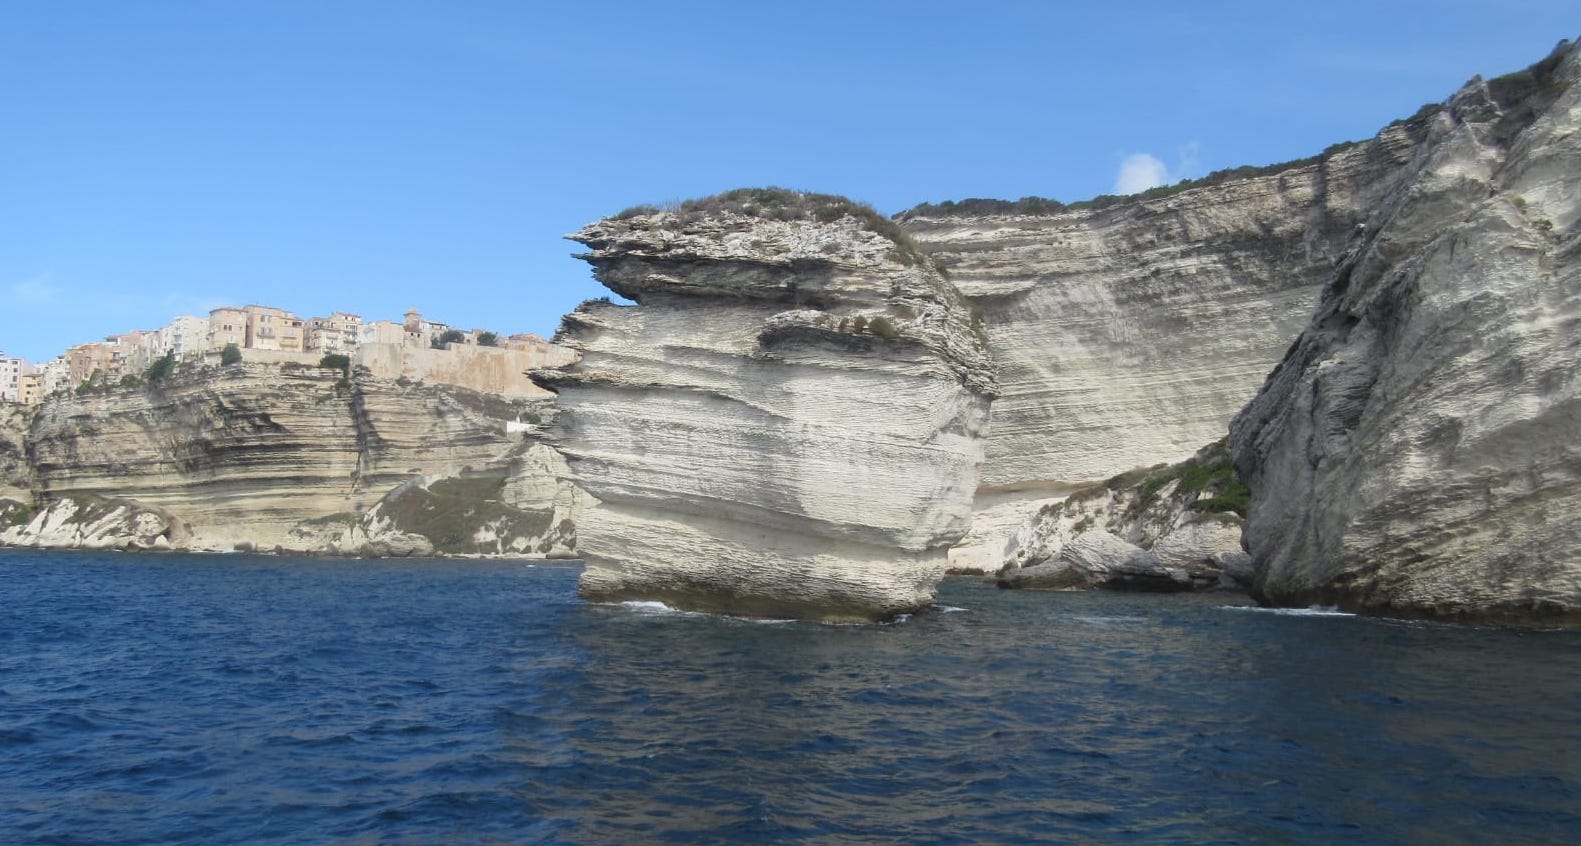 Après une excursion en bateau, vue de Bonifacio par la mer, avec ses hautes falaises de calcaire